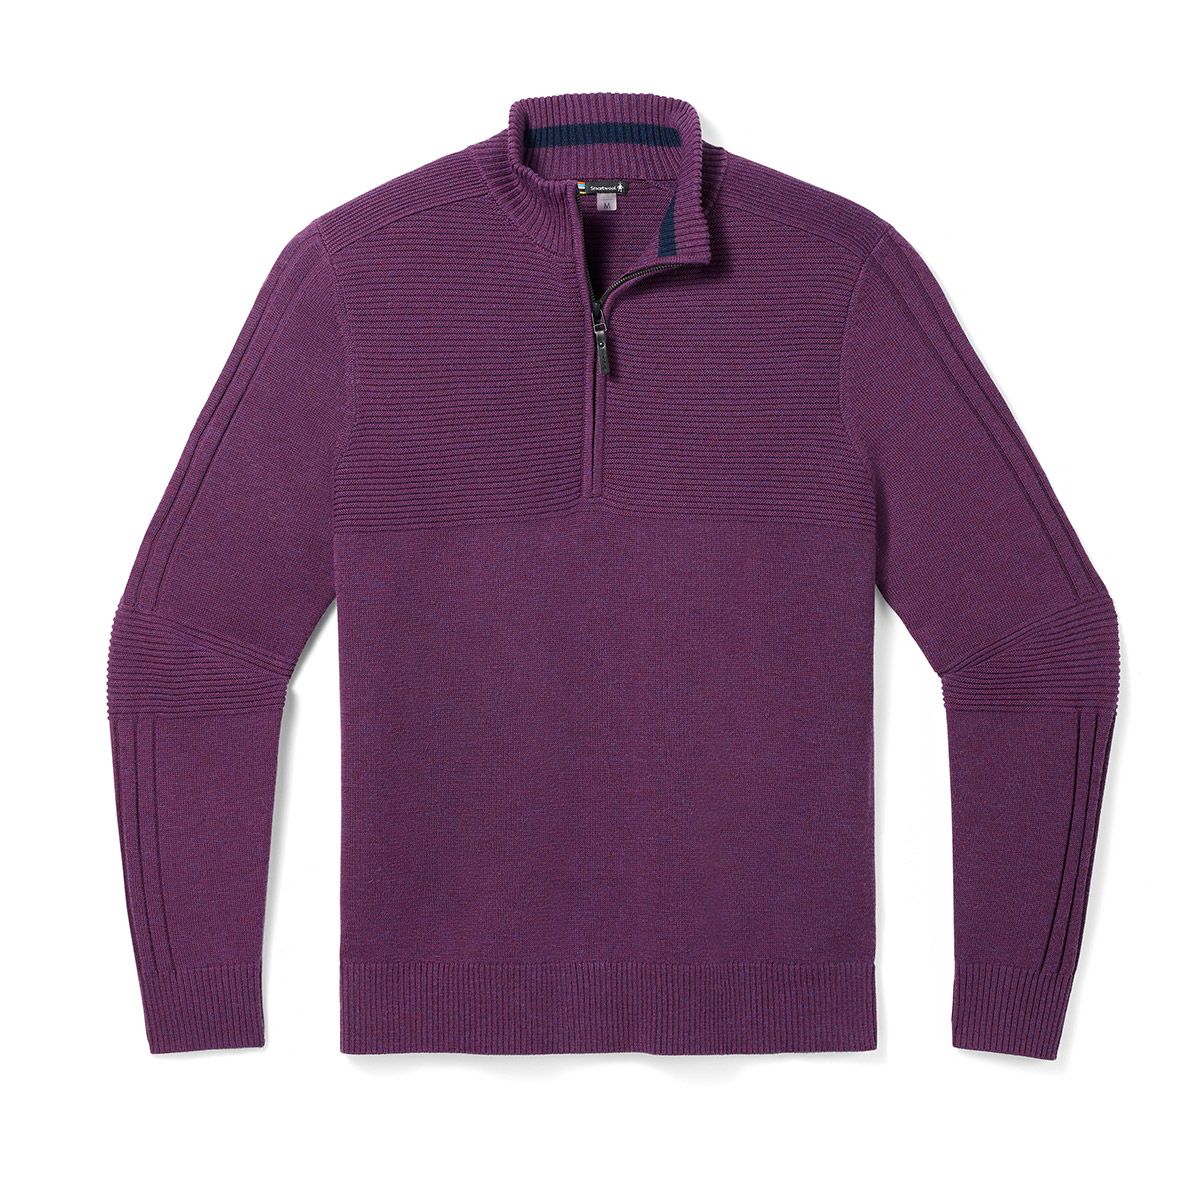 Men's Kitz Half-zip Wool Sweater 2.0